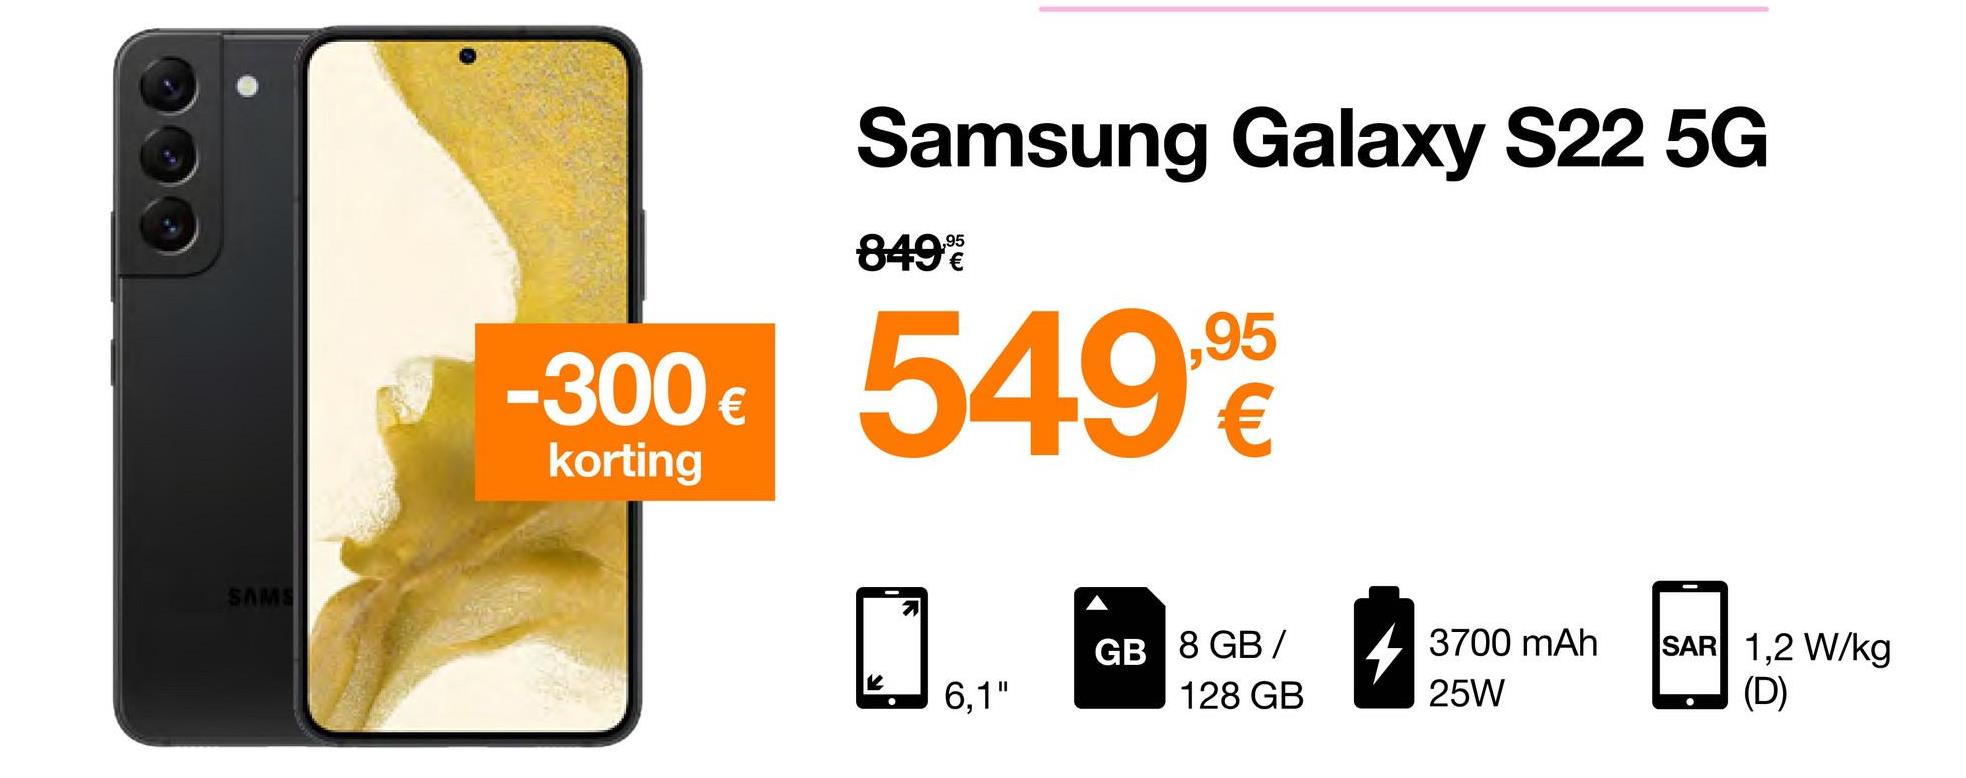 SAMS
-300 €
korting
Samsung Galaxy S22 5G
849%
549.90
€
K
7
6,1"
GB 8 GB/
128 GB
3700 mAh
25W
SAR 1,2 W/kg
(D)